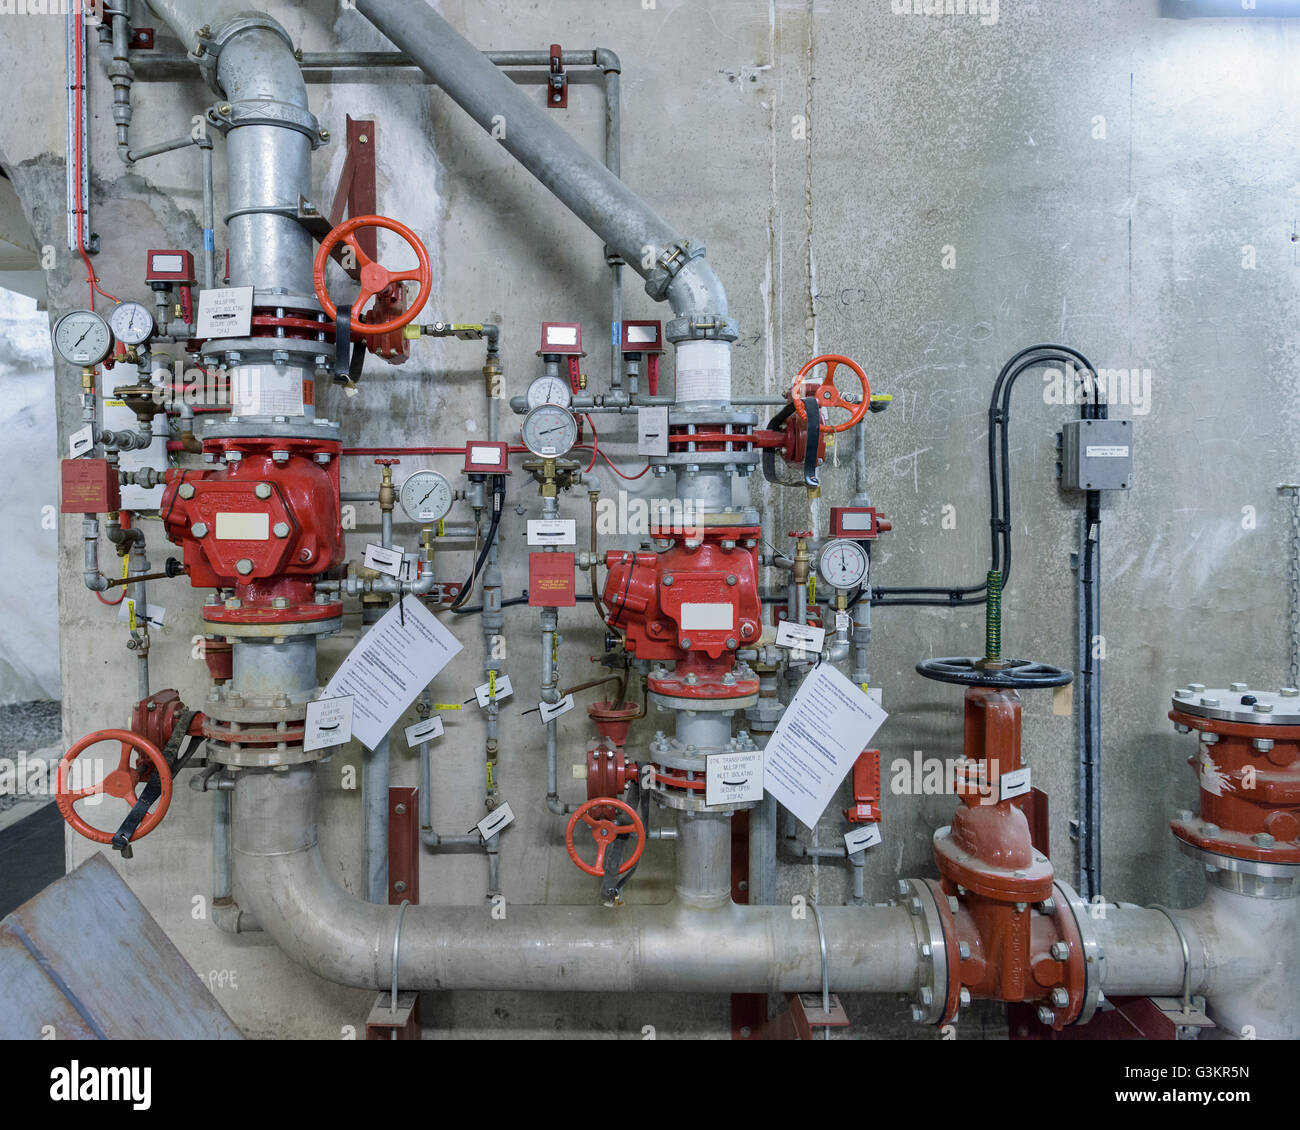 Sistema de control de incendios en la central hidroeléctrica Foto de stock